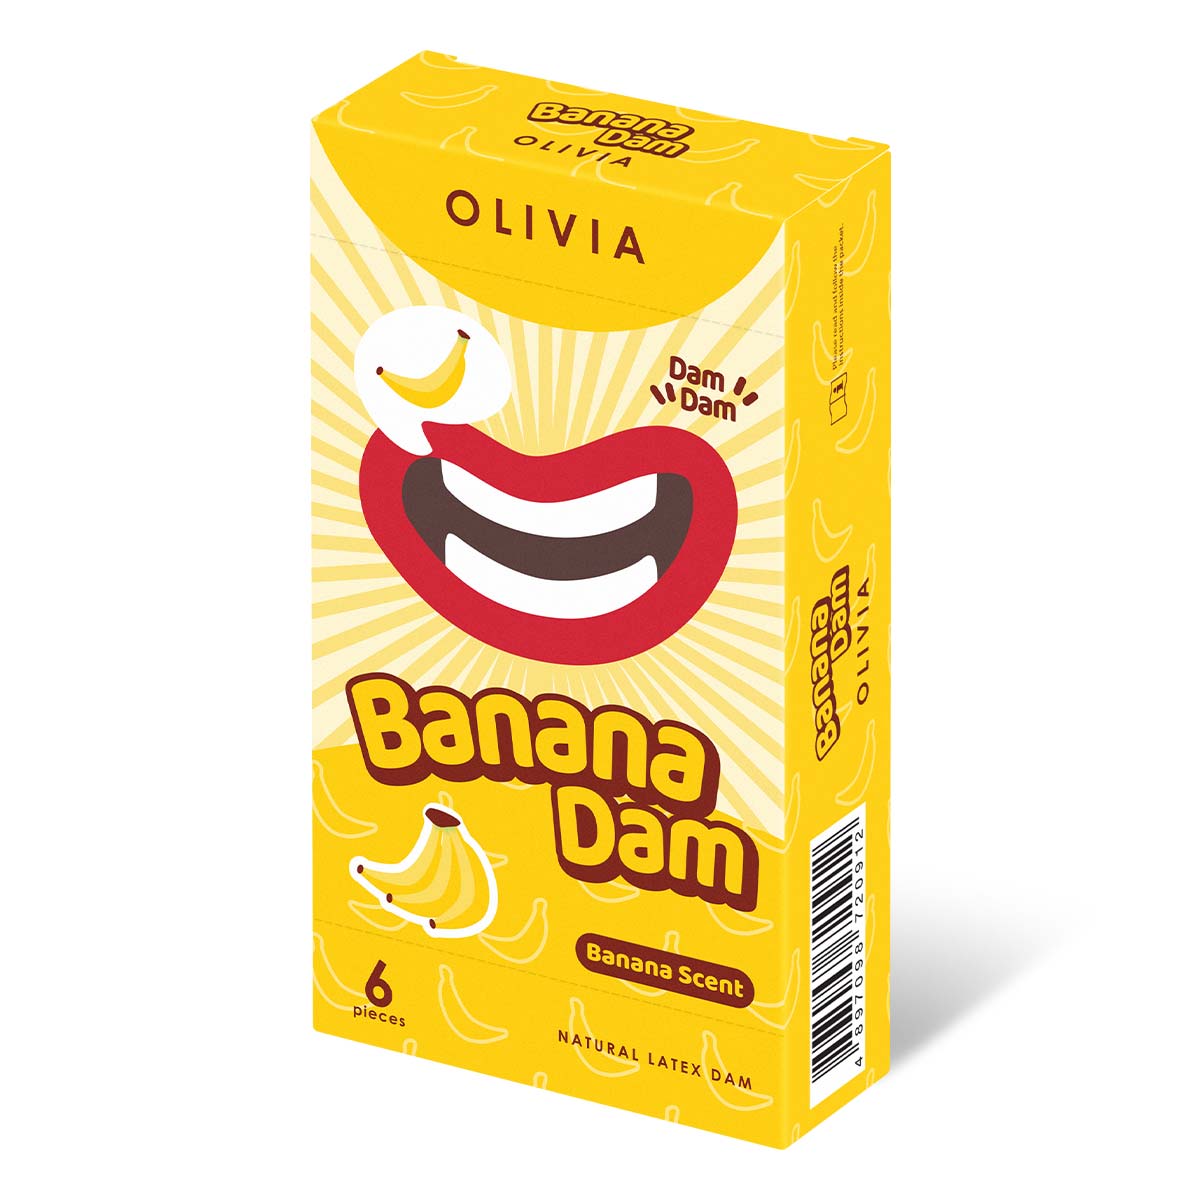 Olivia Banana Scent 6's Pack Natural Latex Dams-p_1